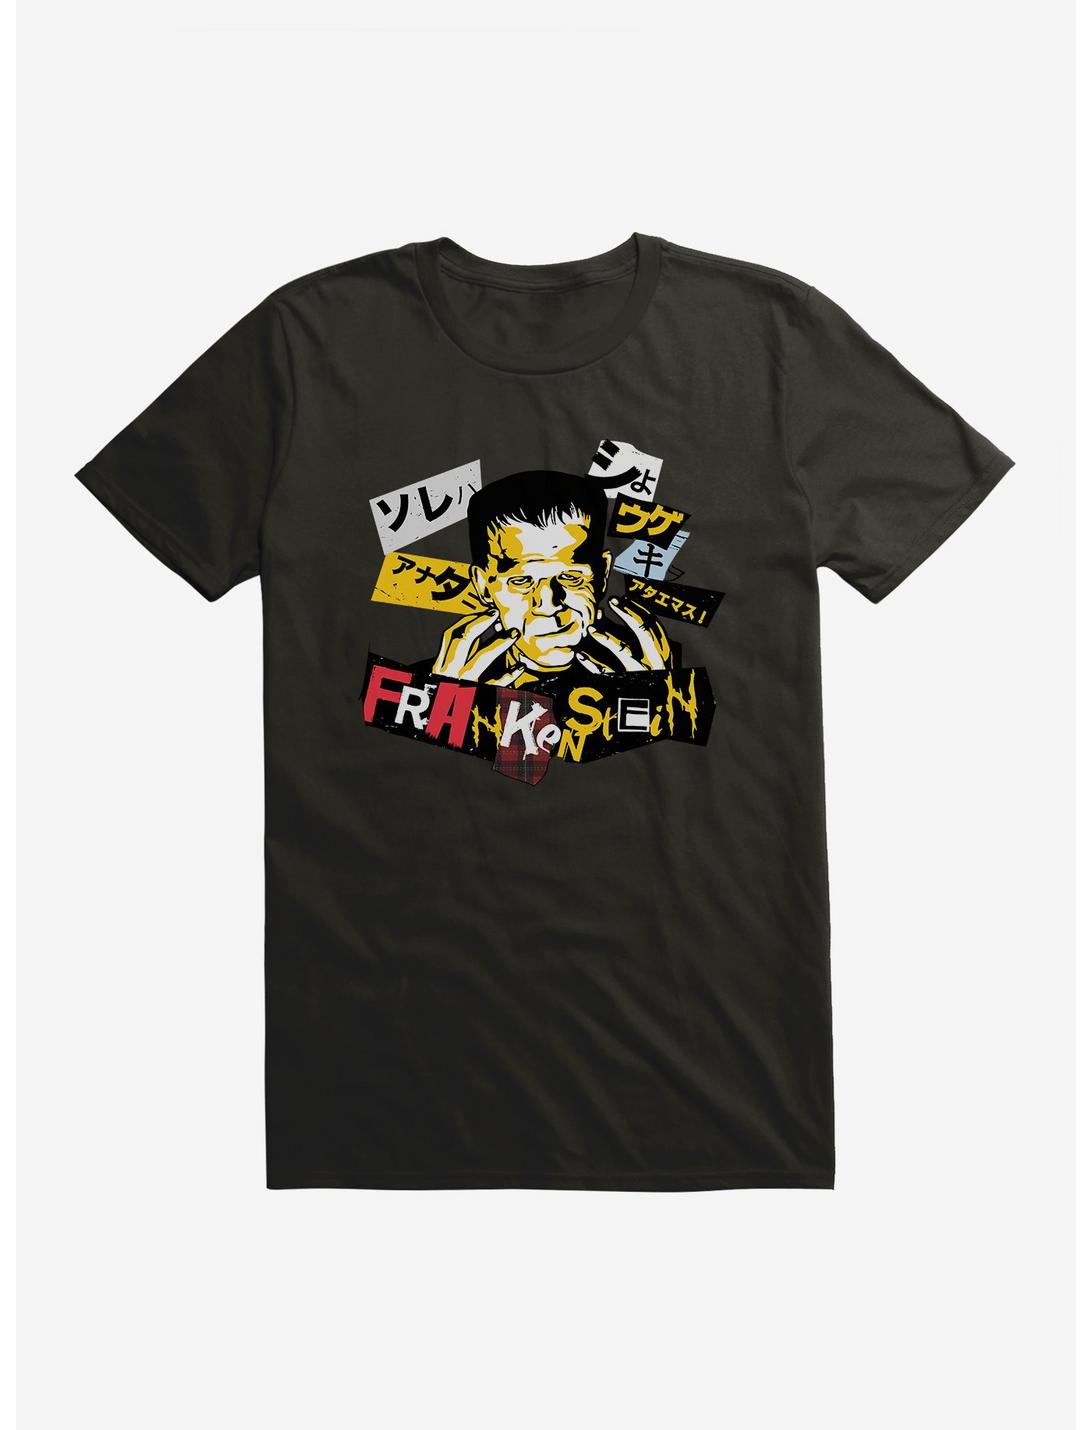 Universal Monsters Frankenstein Collage letteringT-Shirt, BLACK, hi-res